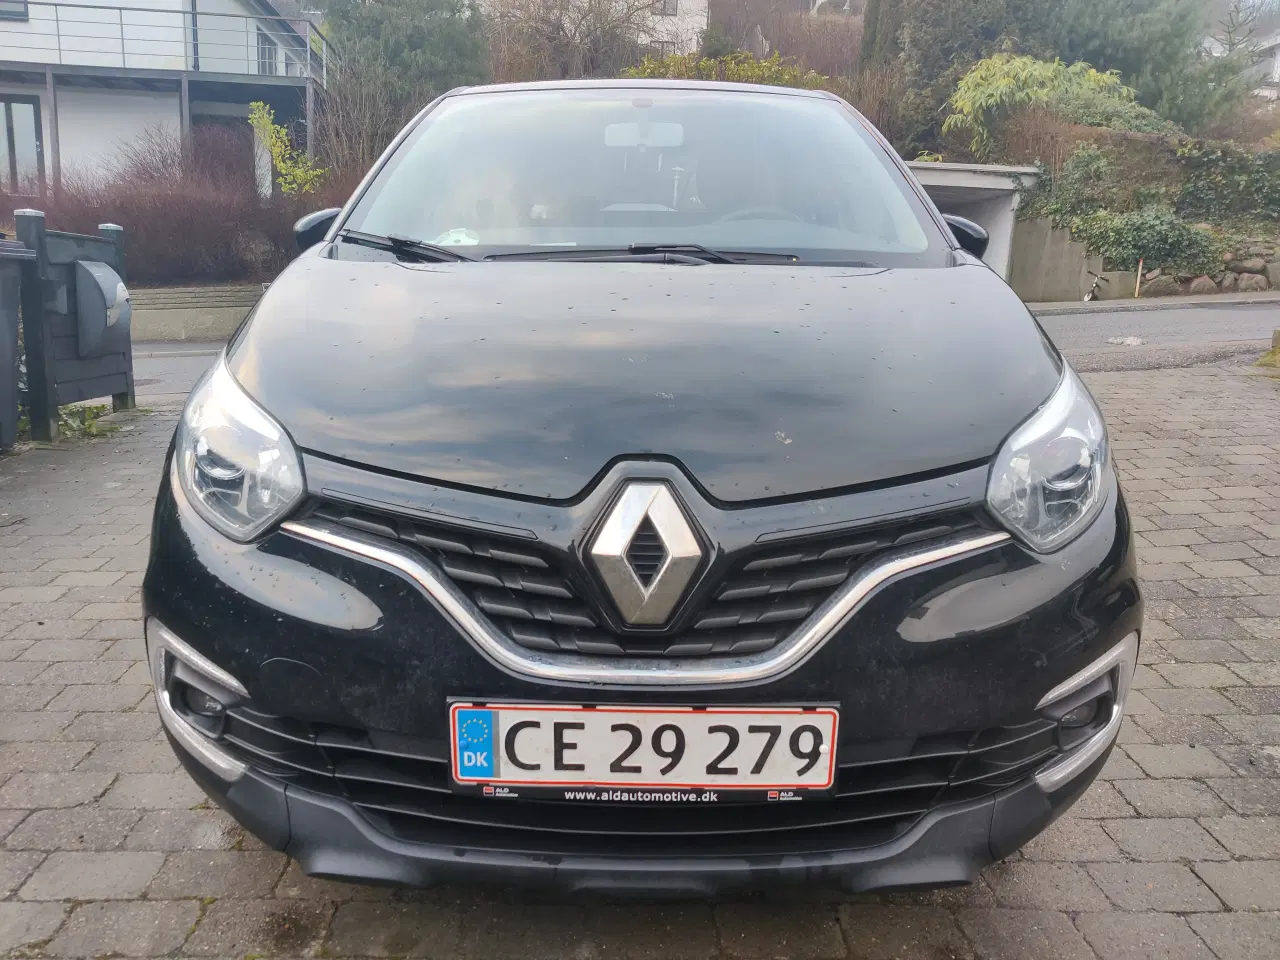 Billede 1 - Renault Captur - billigste 2018 Captur i DK